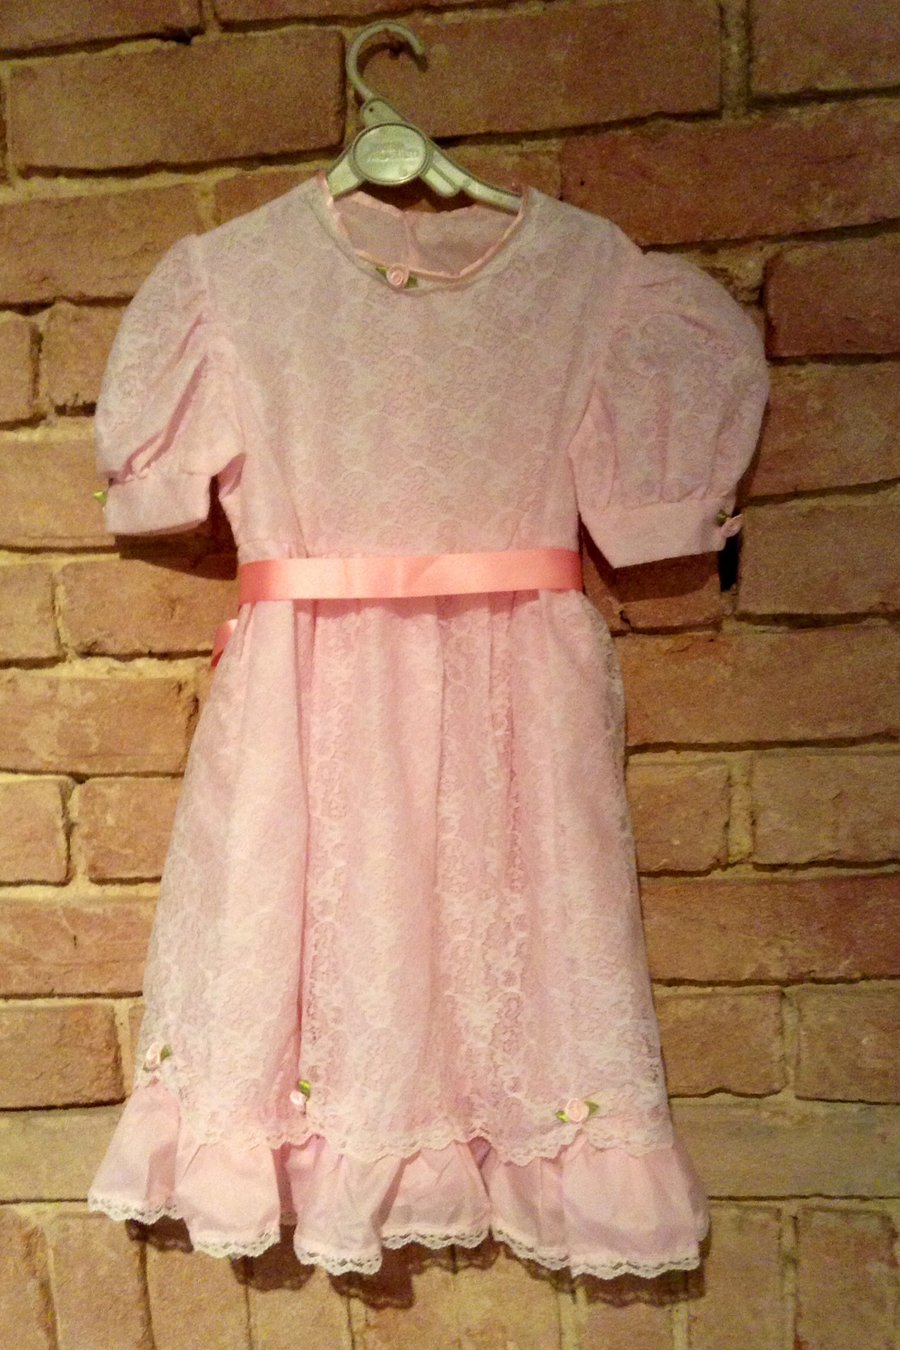 'Pretty in Pink' little girl's dress 